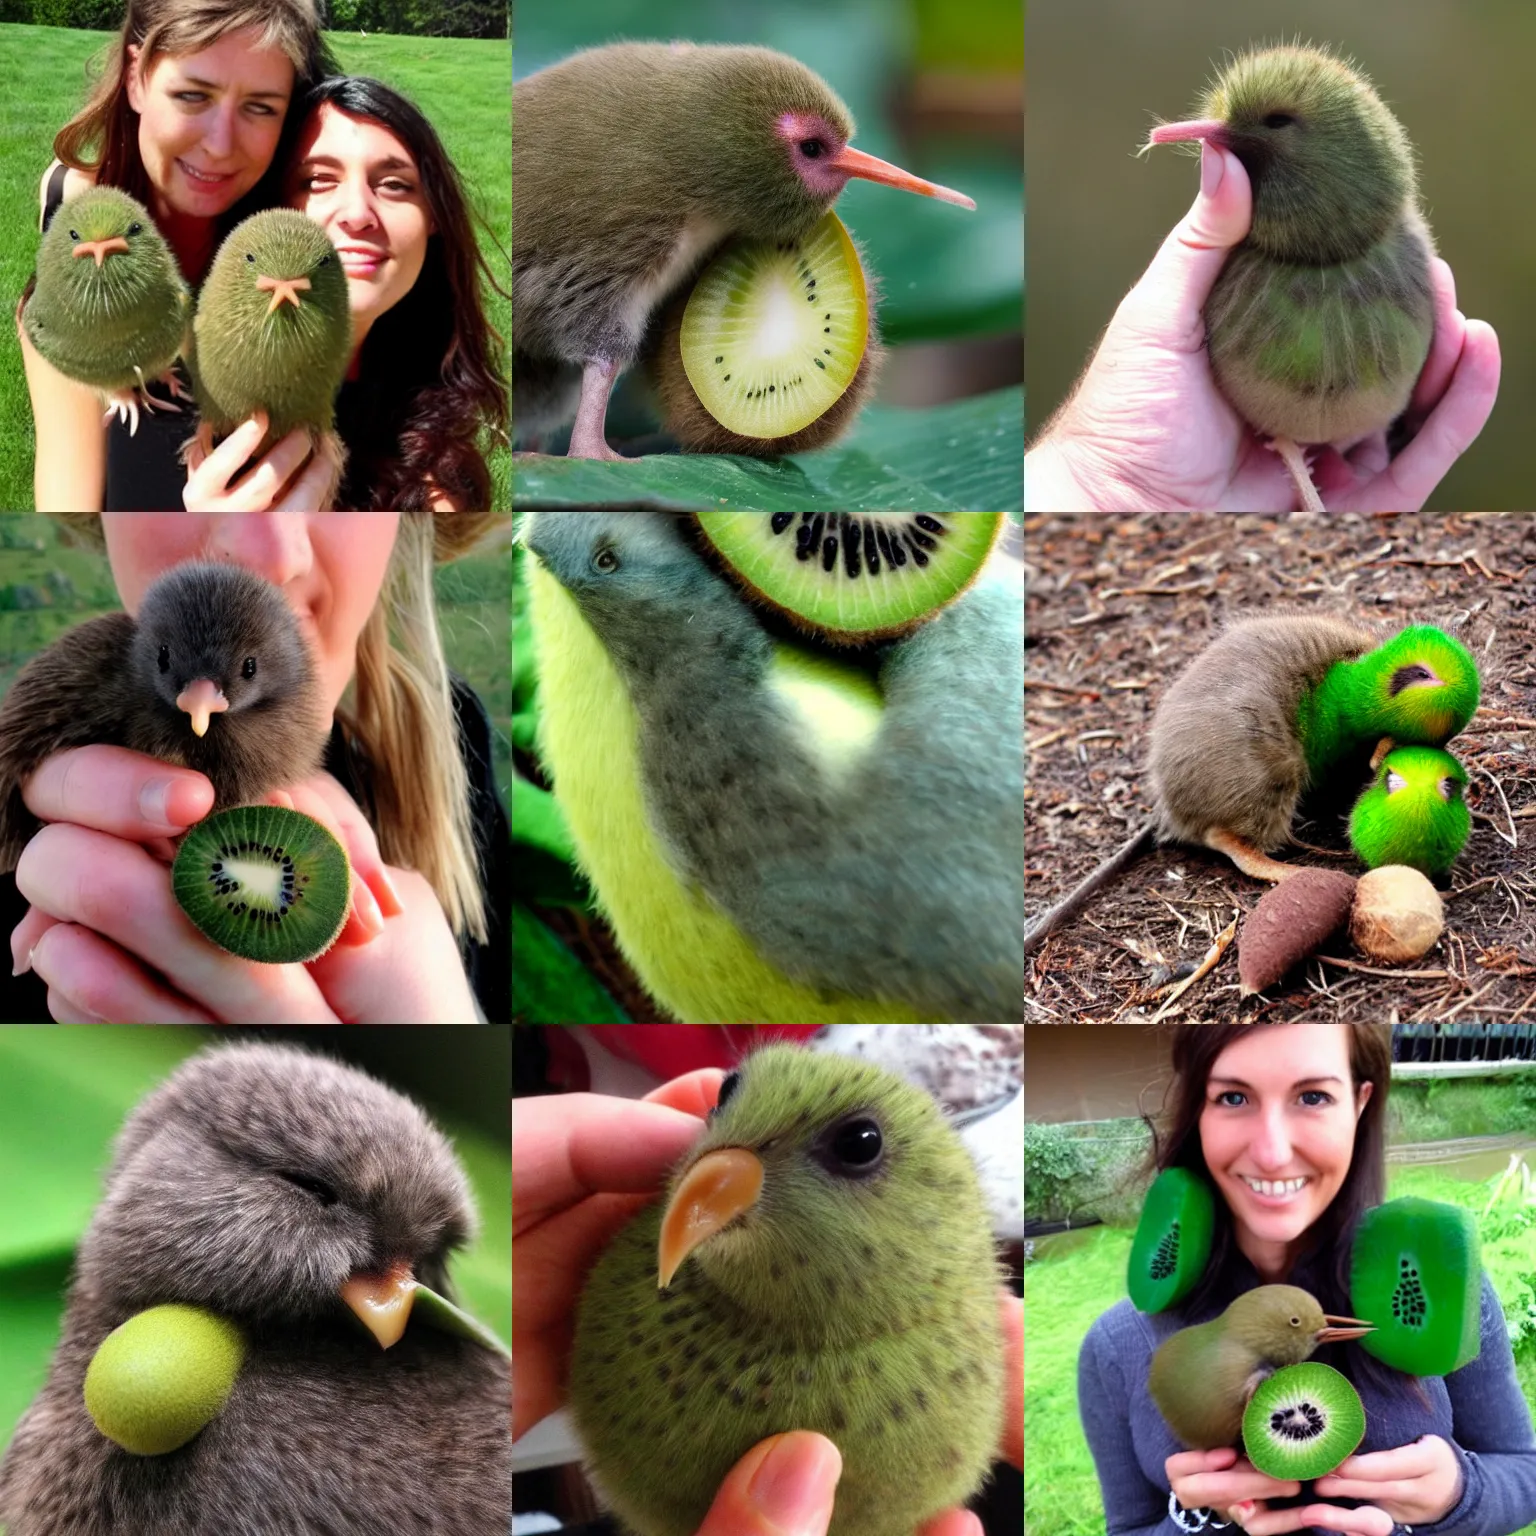 Prompt: Kiwi kiwi kiwi with a kiwi on a kiwi, kiwi, kiwi